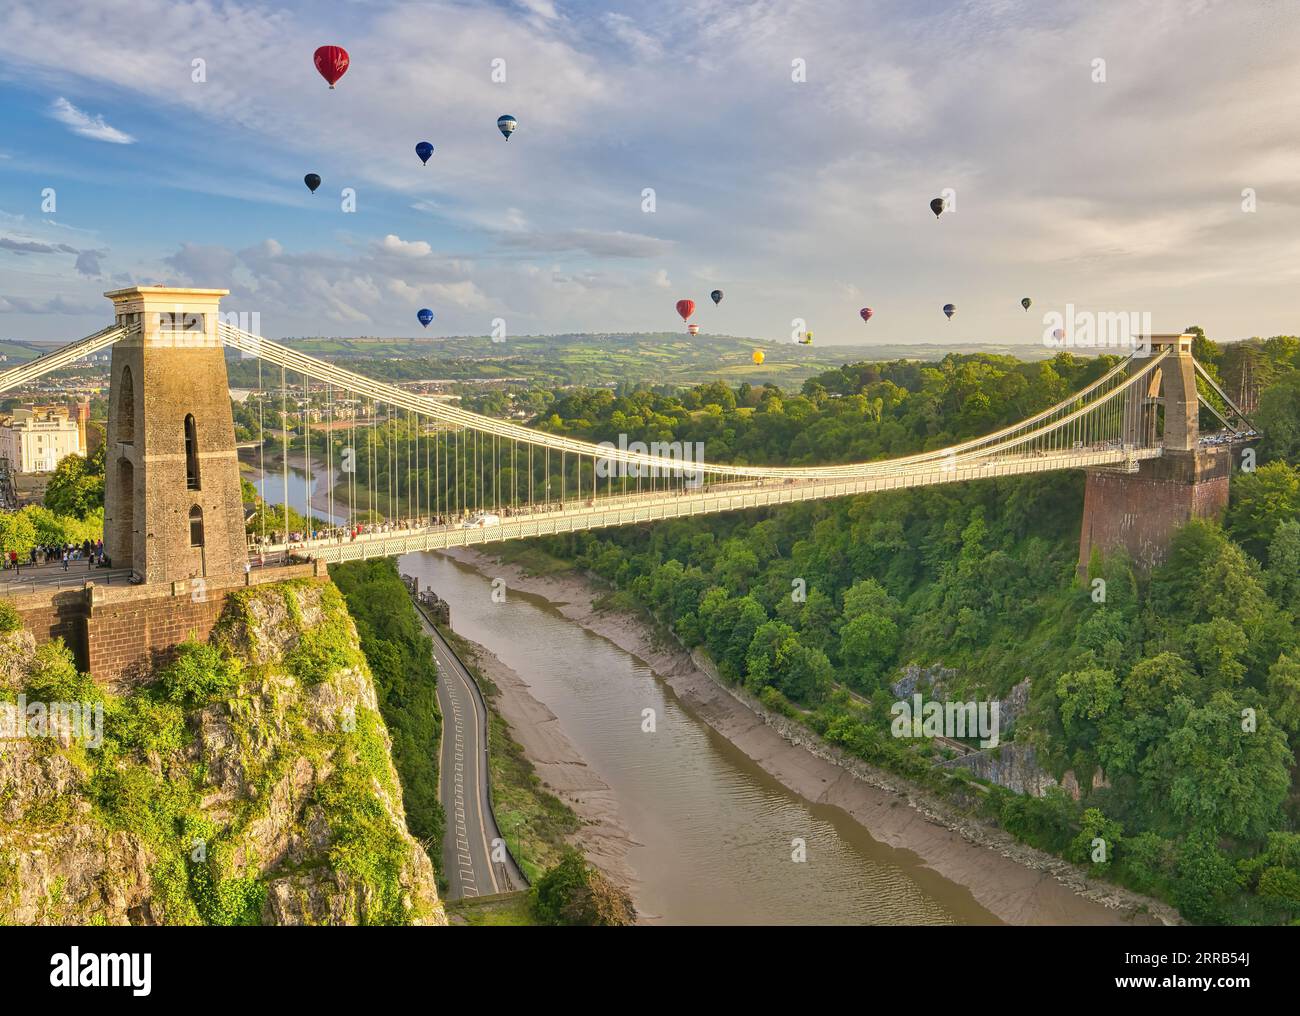 Der Massenaufstieg bei der Bristol International Balloon Fiesta, während farbenfrohe Heißluftballons über die Clifton Suspension Bridge in die Luft fliegen. Stockfoto